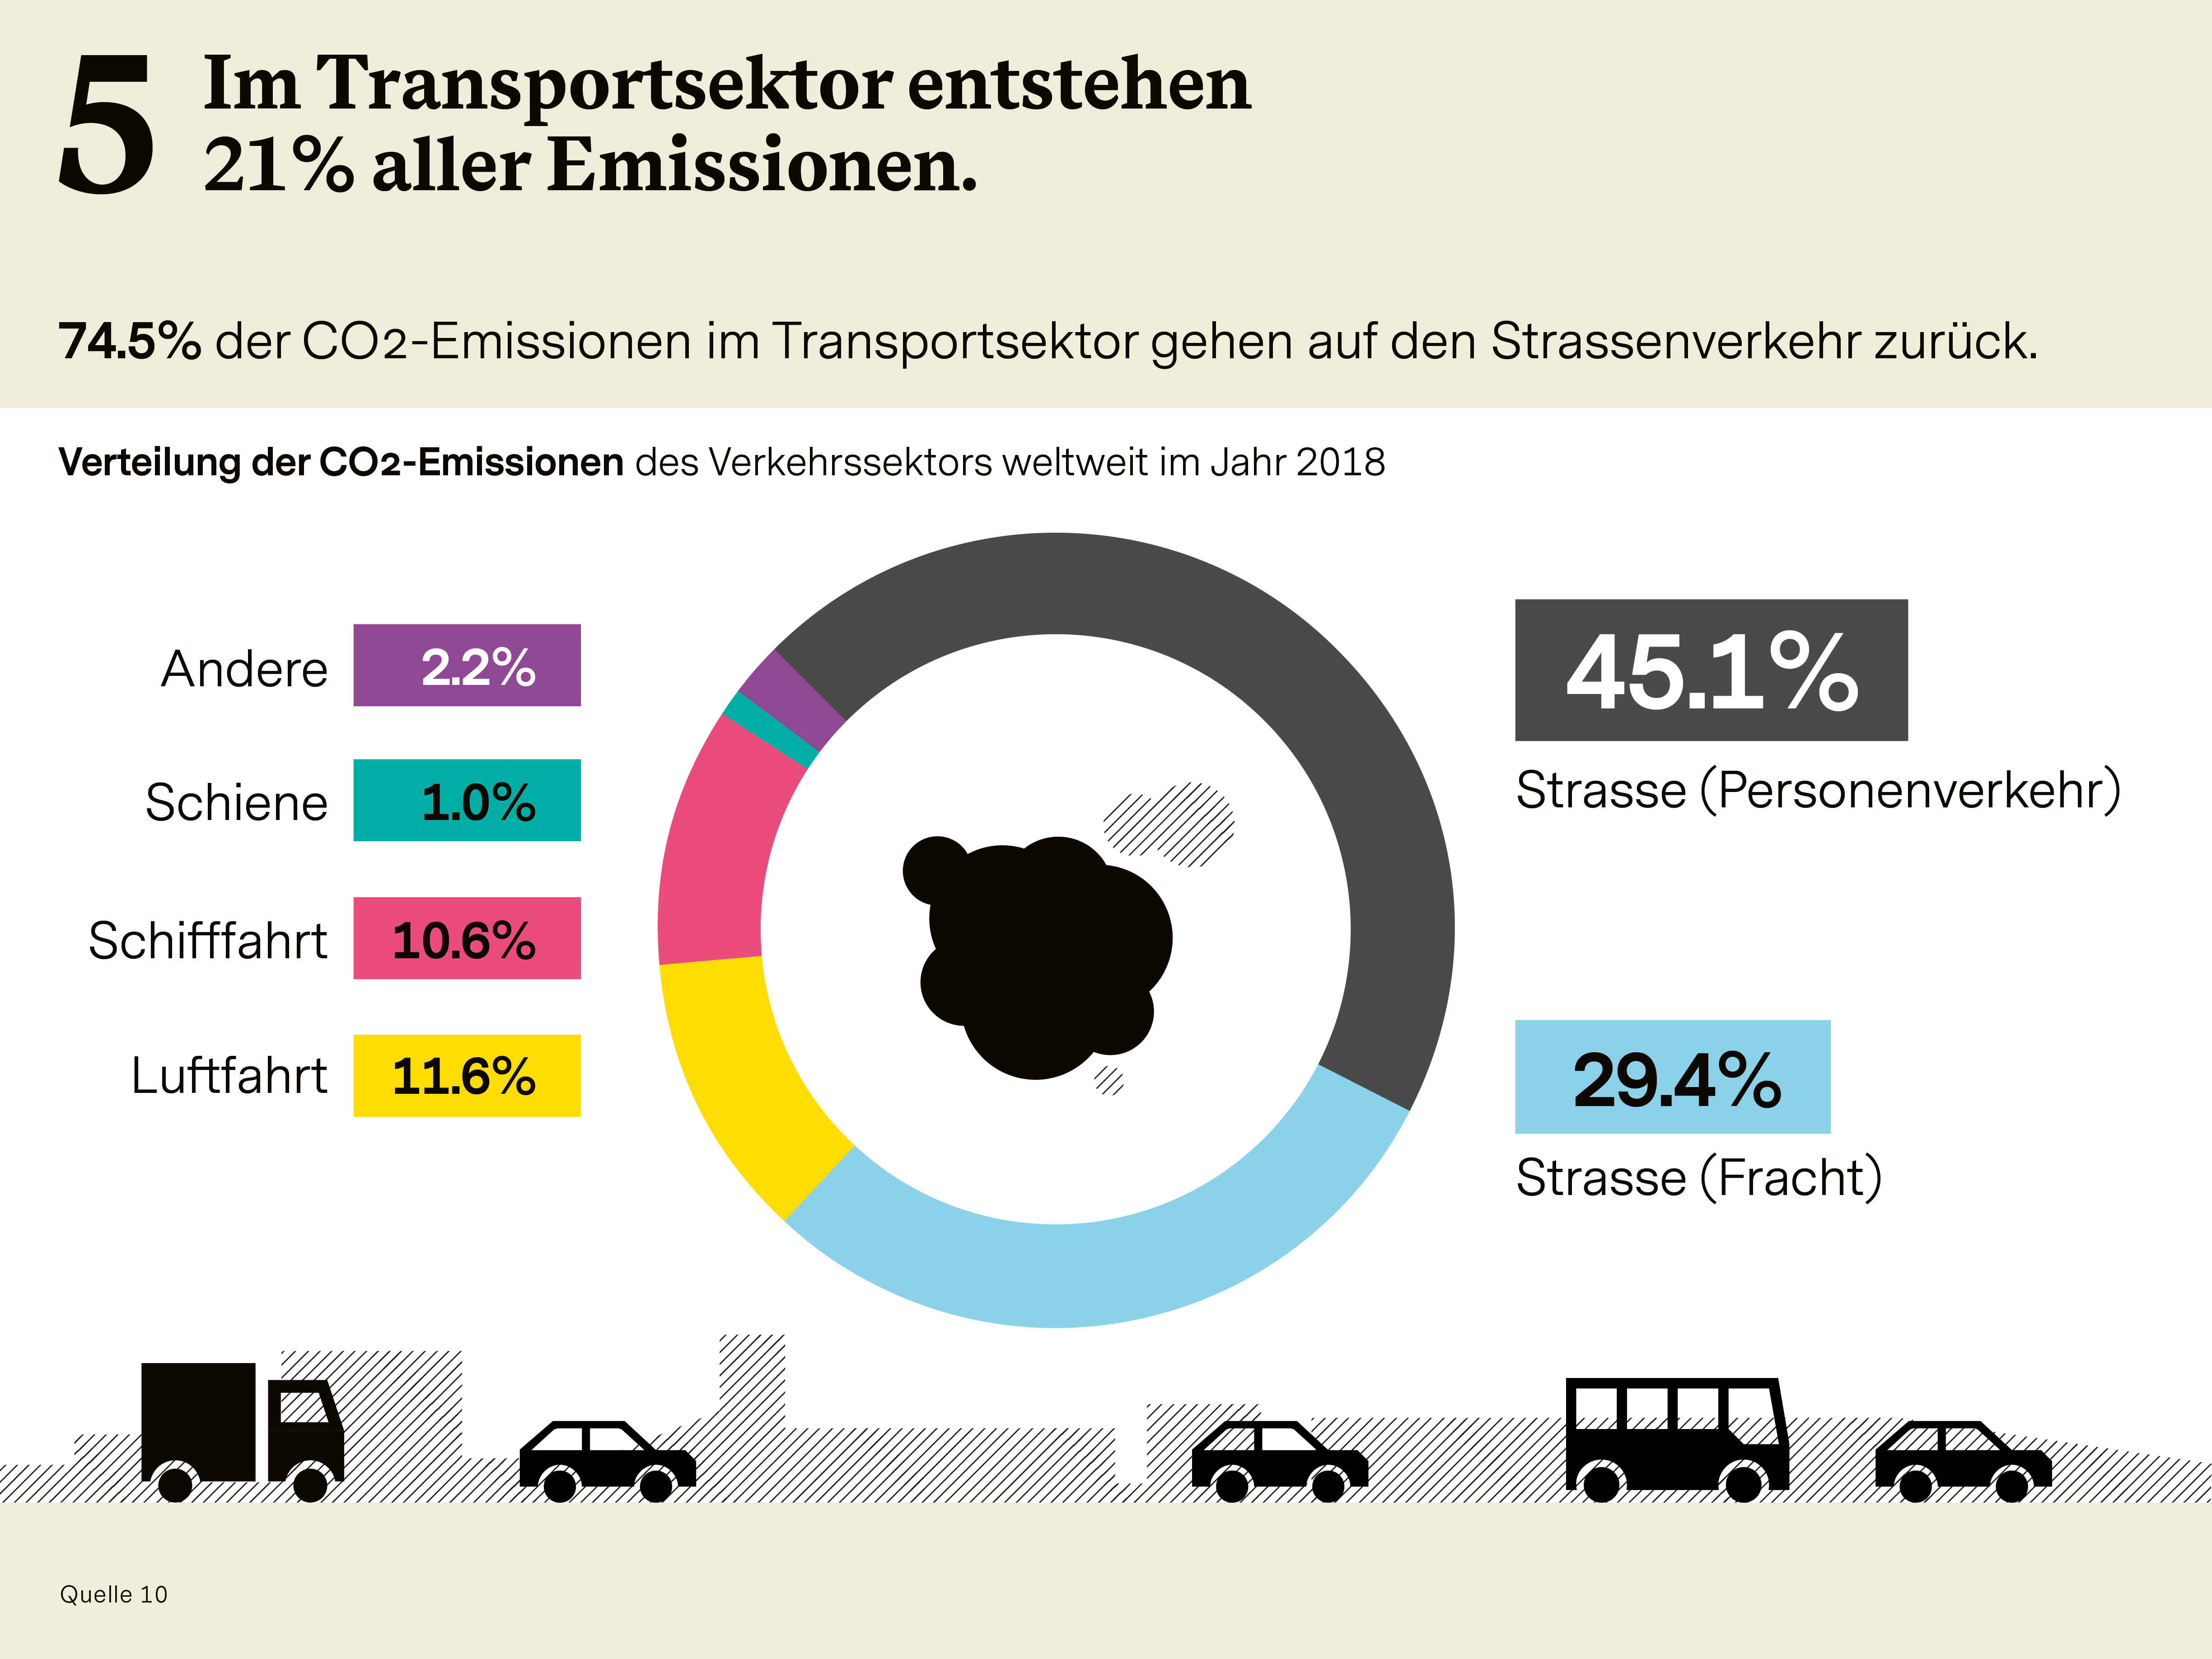 Infografik zum Thema "Emissionsarme Logistik und Transport" (Teil 5 der Serie "6 Wirtschafts-Bereiche für Impact Investing")